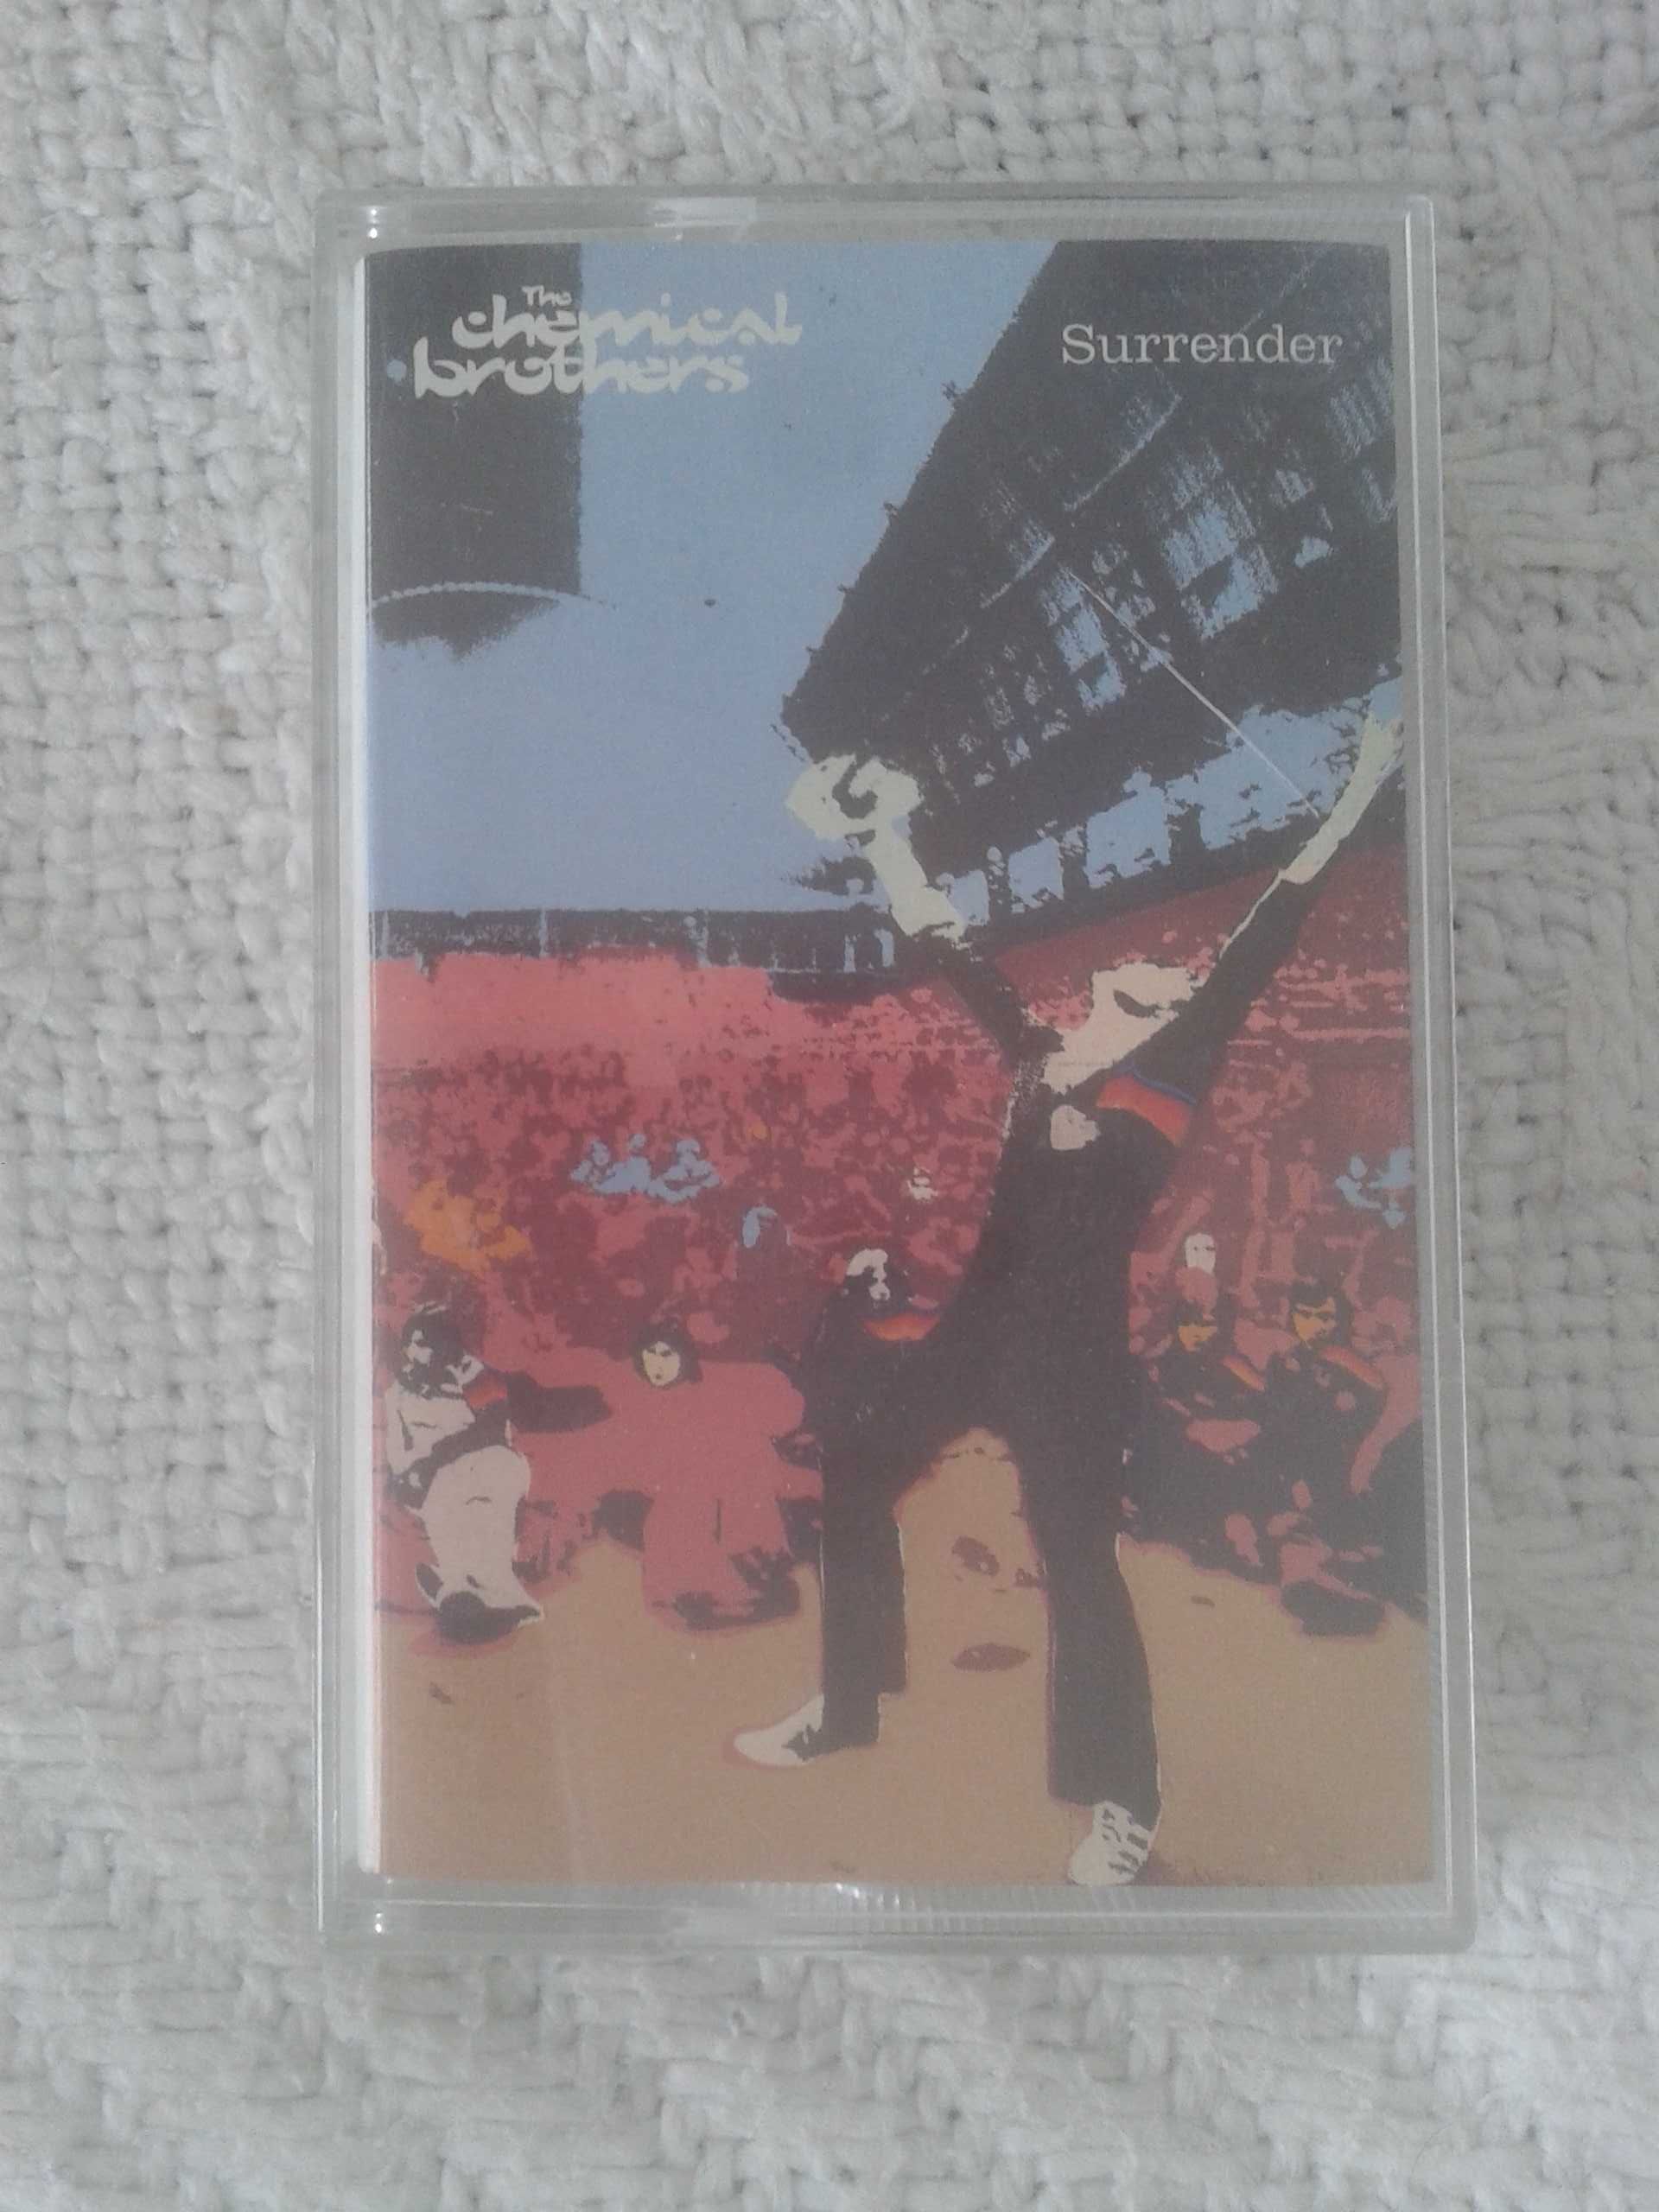 Sprzedam oryginalną kasetę magnetofonową The Chemical Brothers